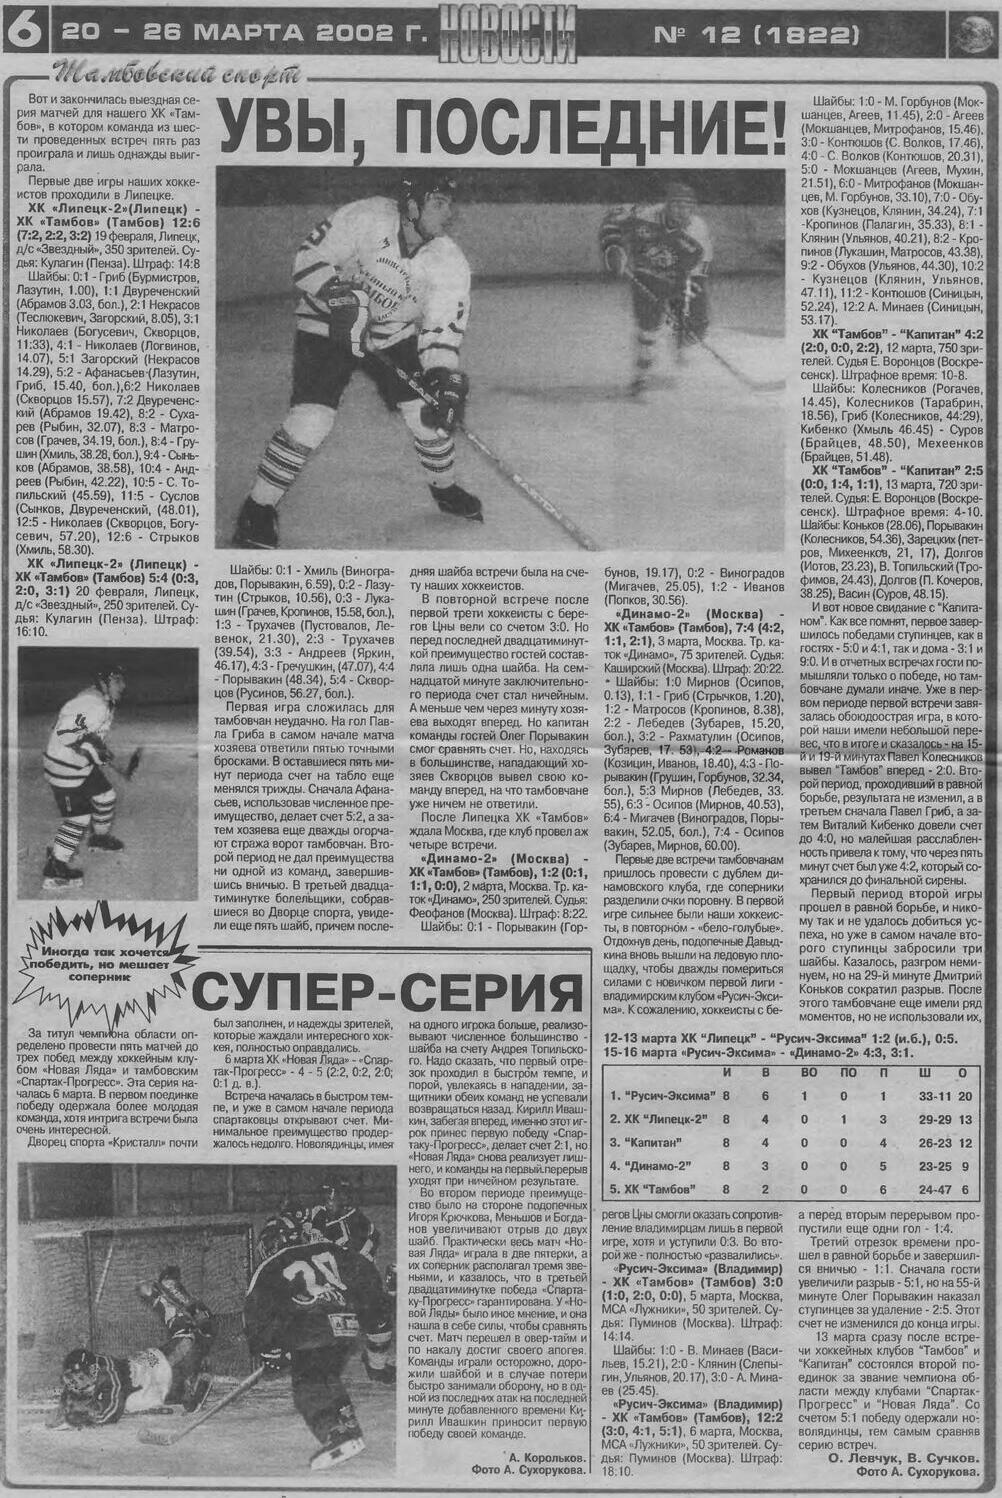 Газета "Новости. Тамбовский спорт" №1822 от 20.03.2002г.